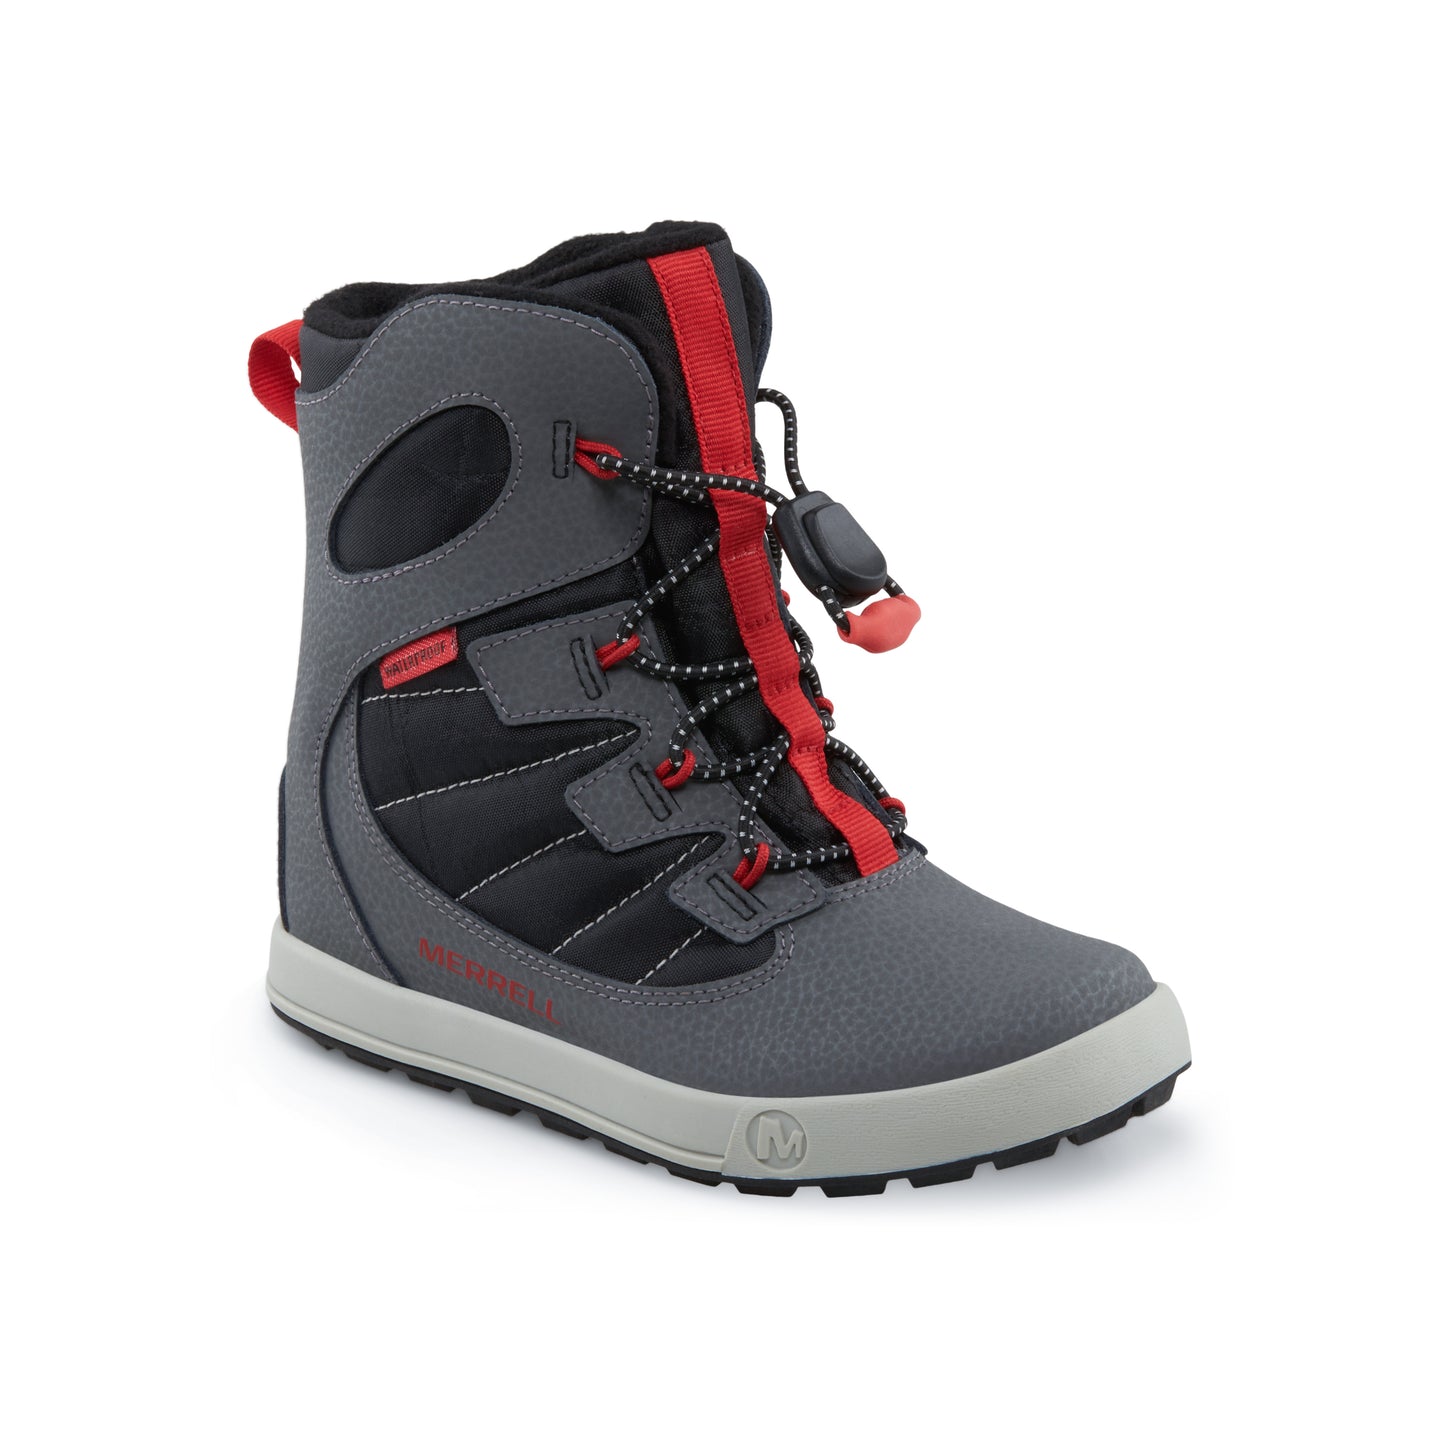 Snow Bank 4.0 Waterproof Boot Grey/Black/Red